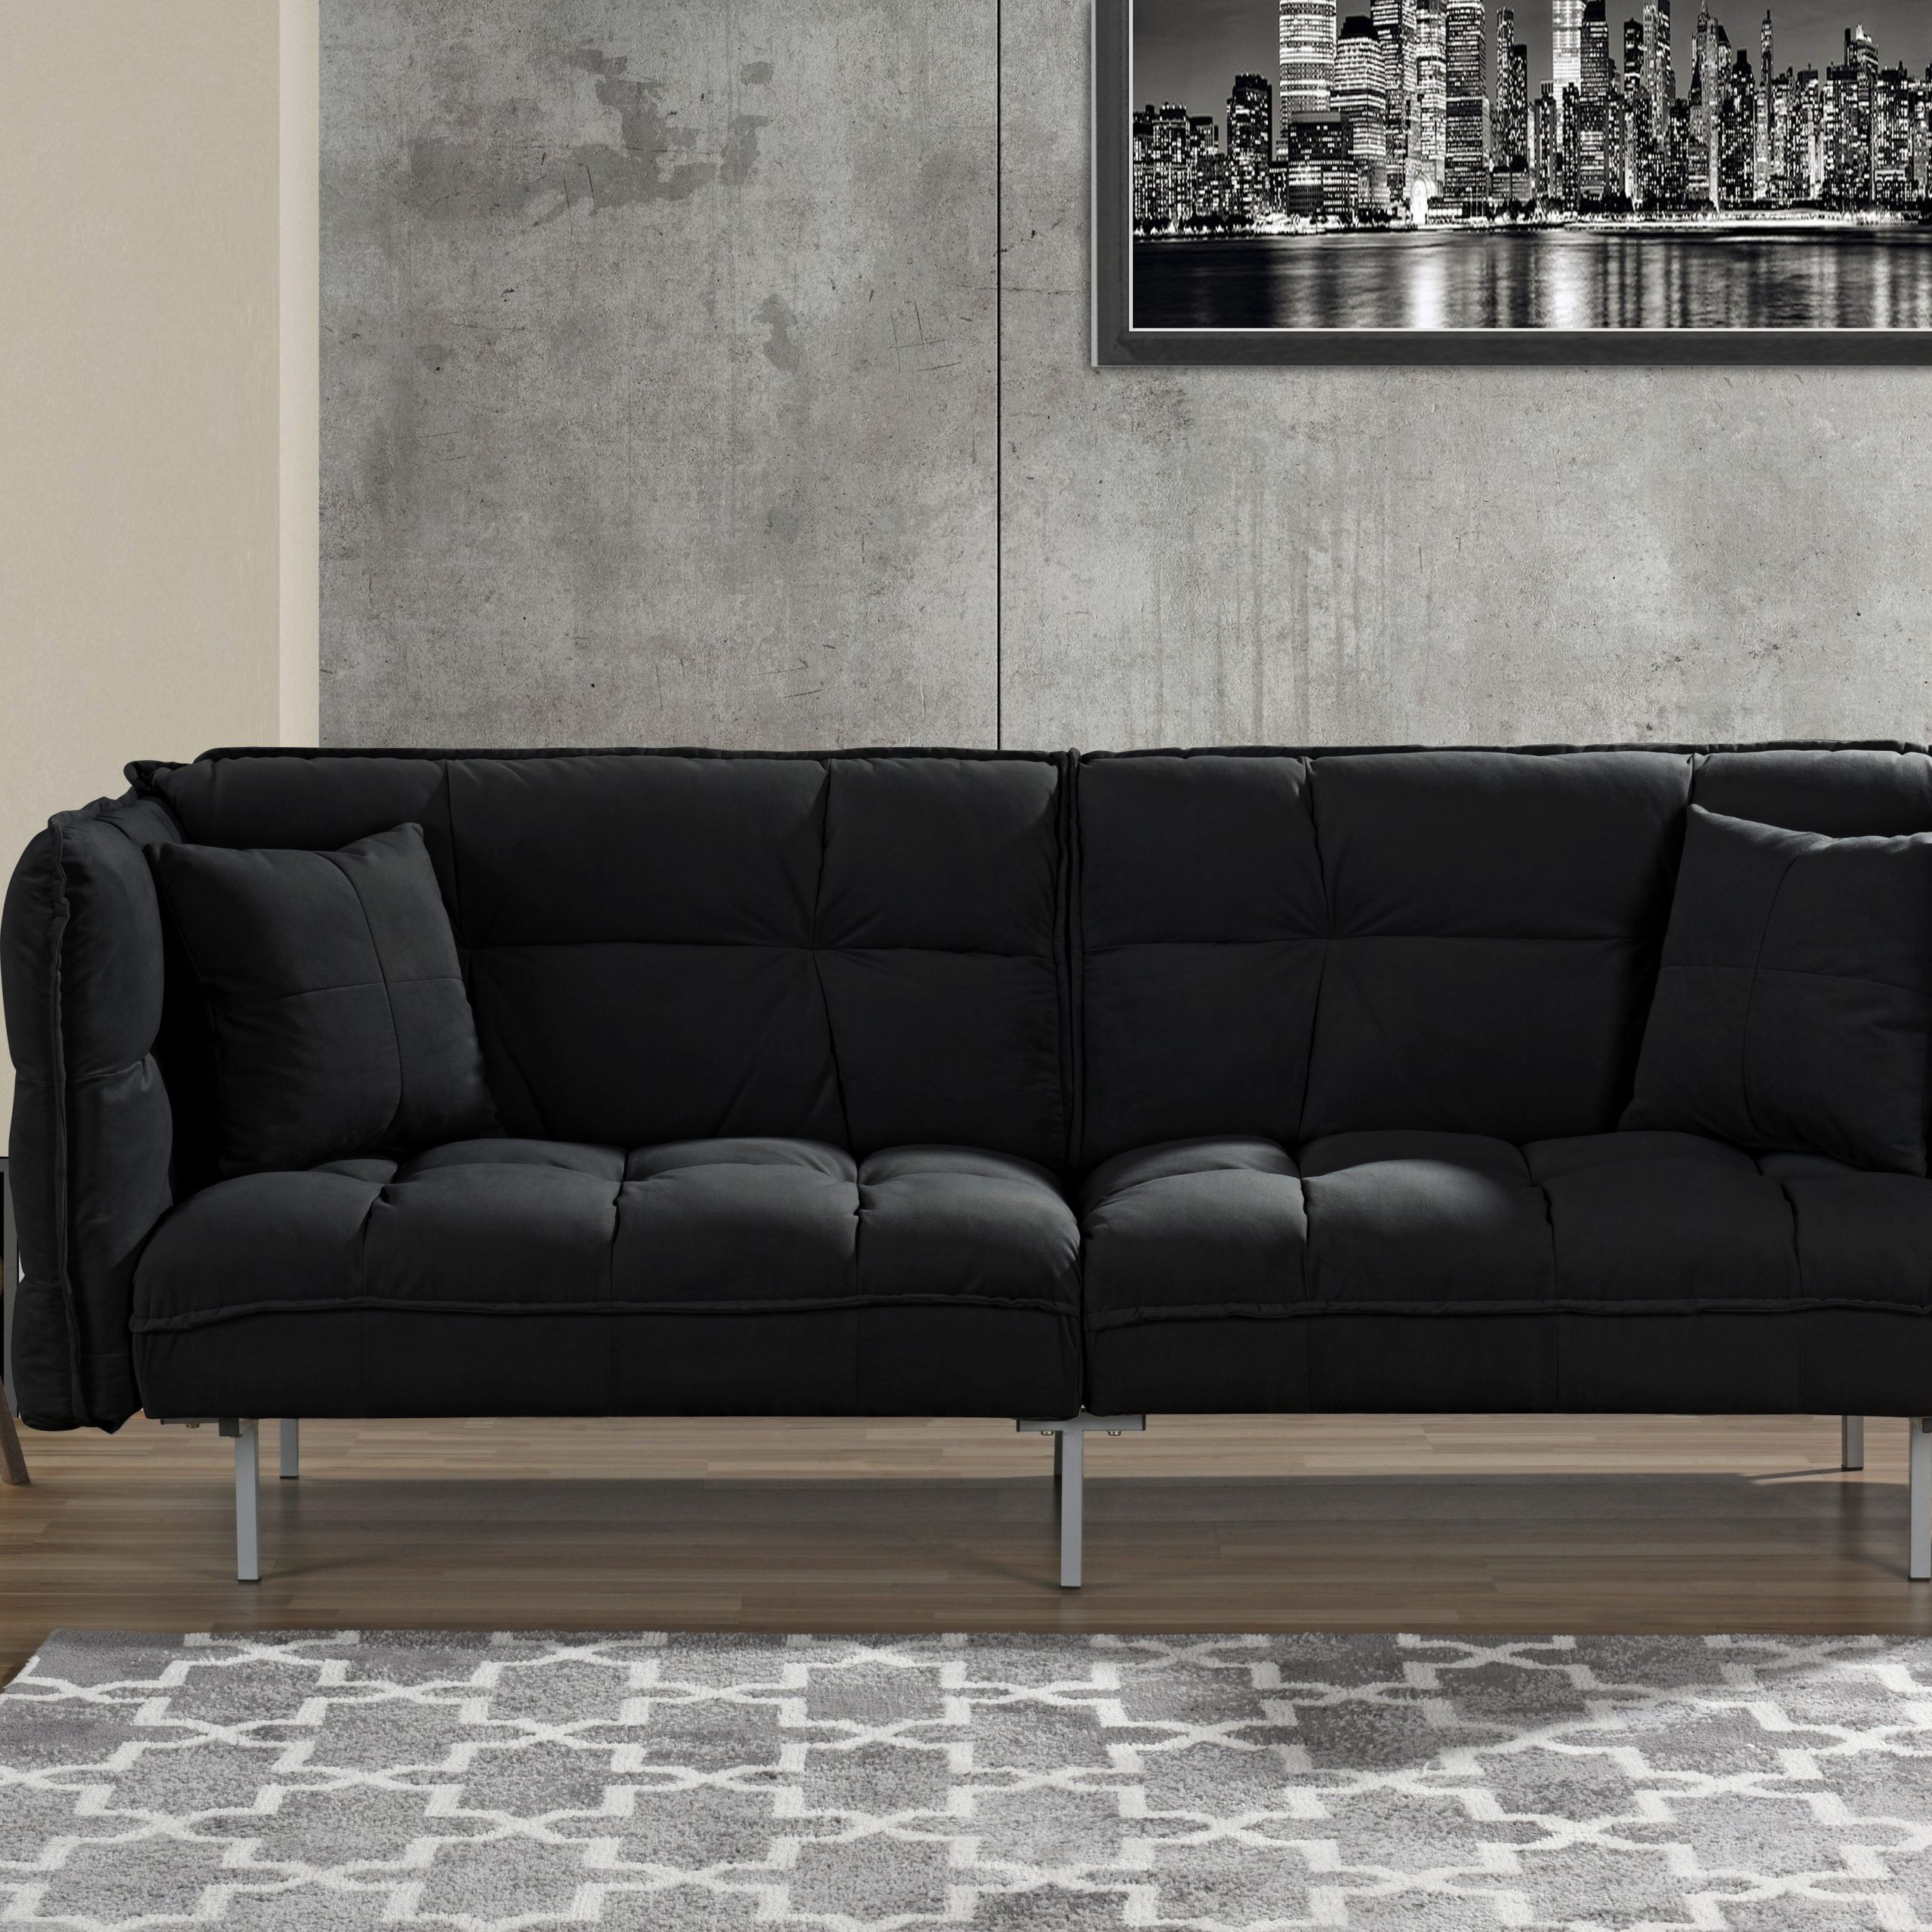 Plush Tufted Velvet Sleeper Sofa, Black – Walmart Within Black Velvet Sofas (Gallery 7 of 20)